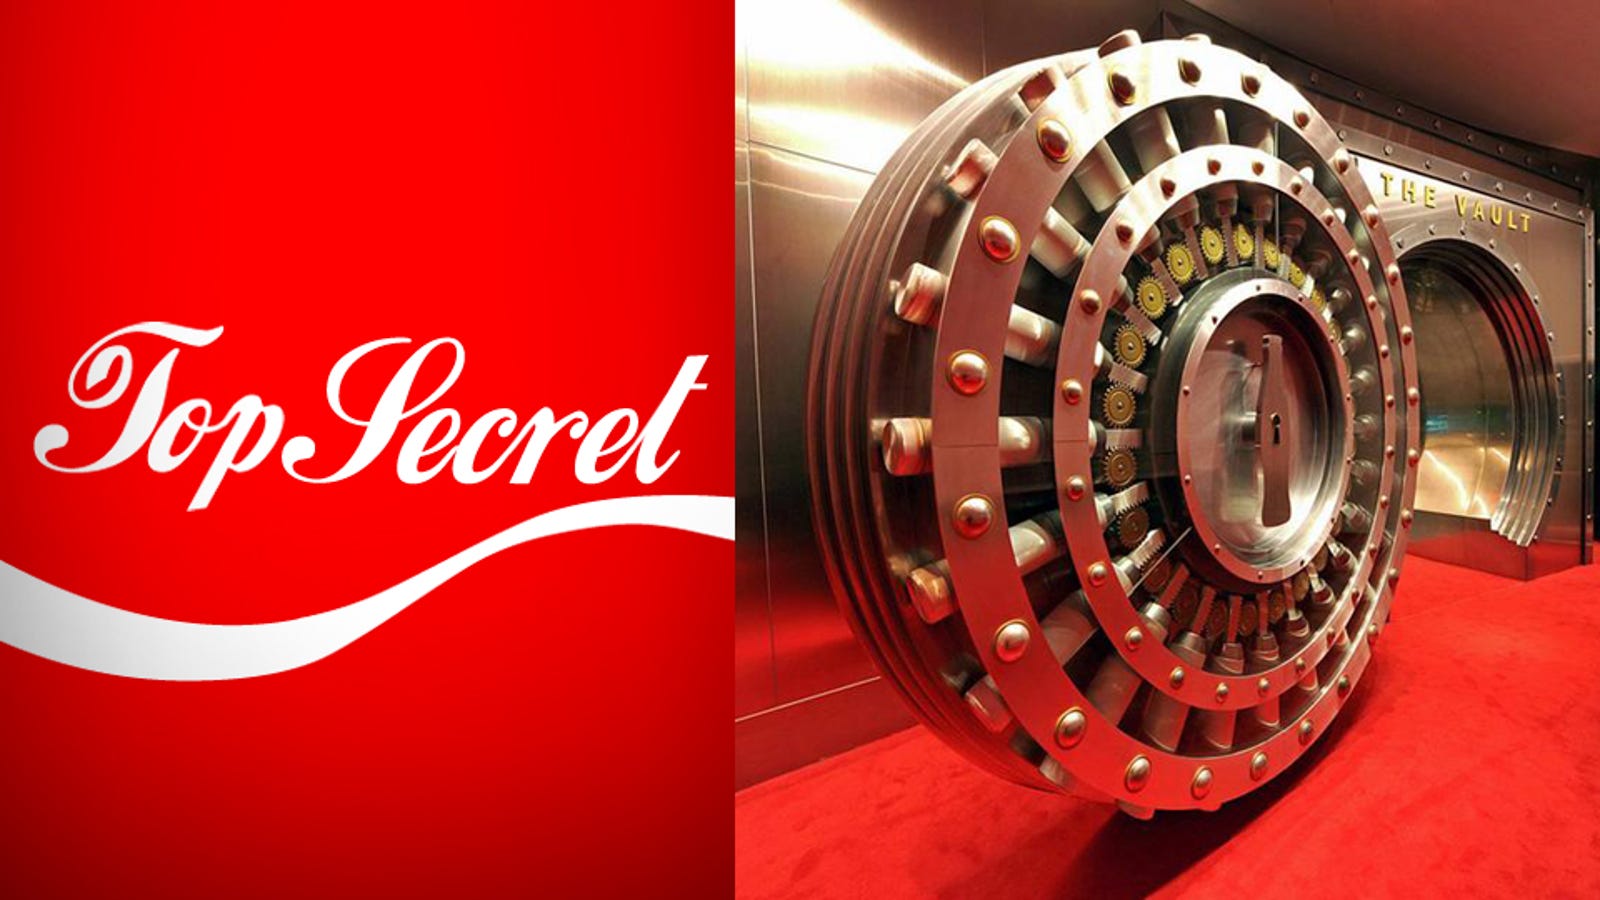 The New Vault That Guards CocaCola's Secret Formula